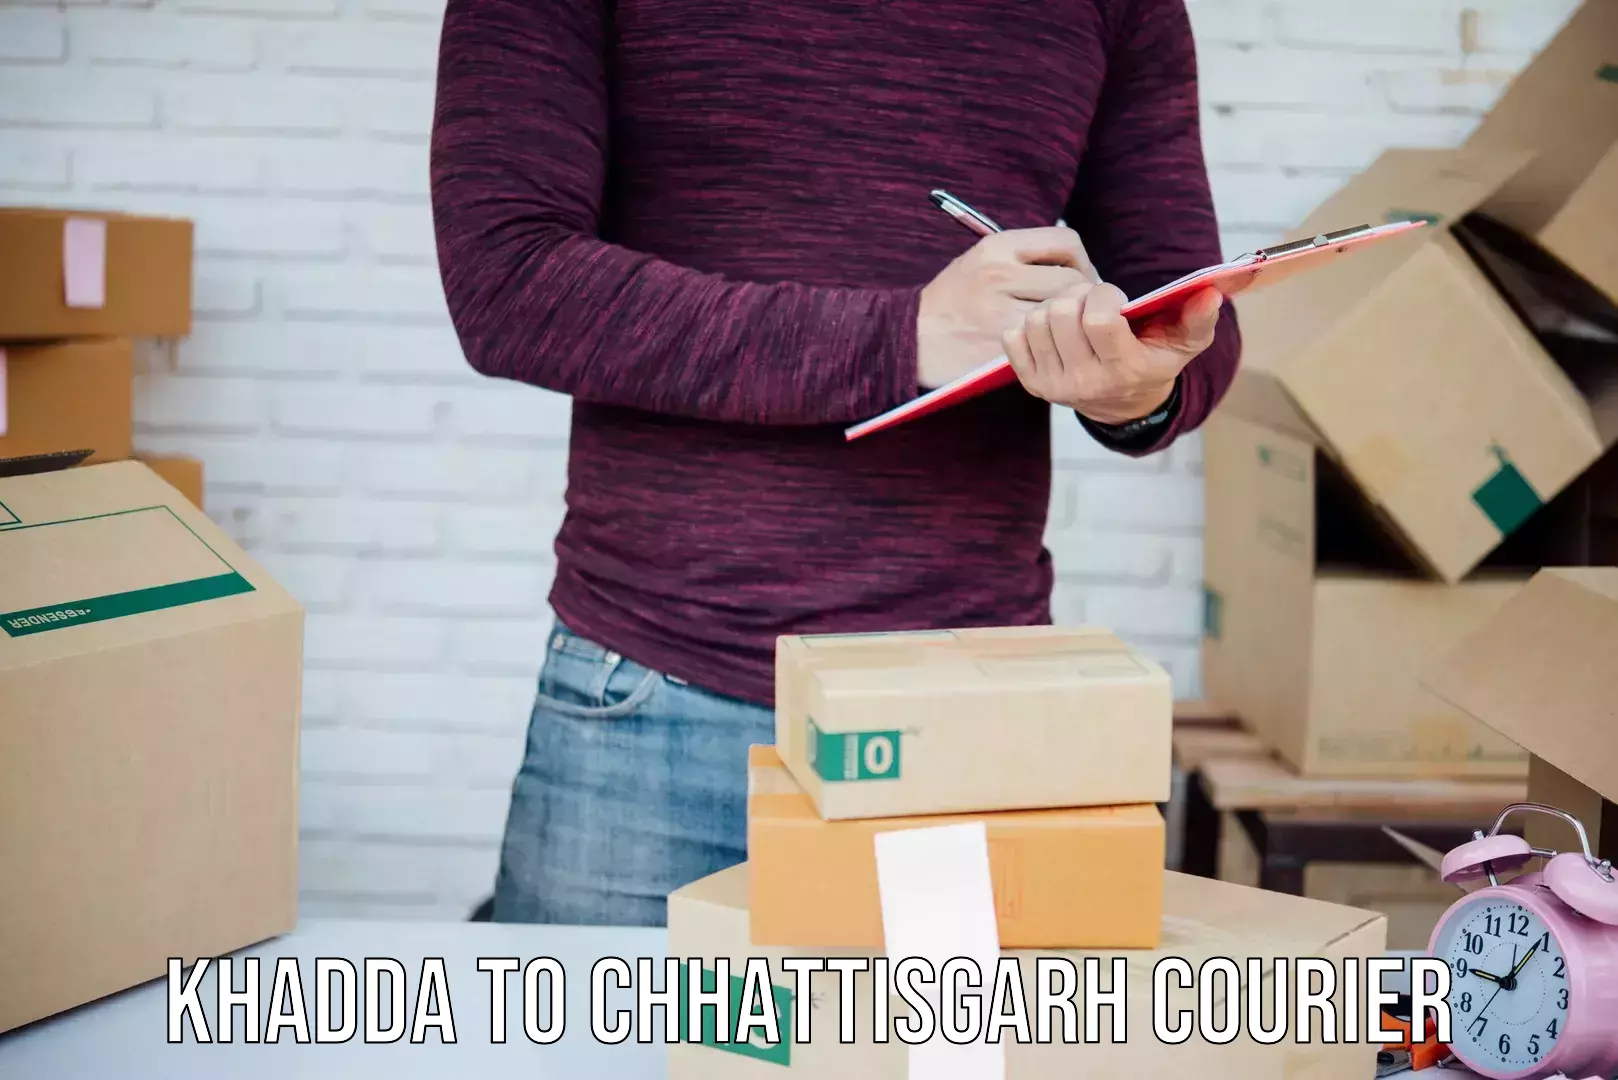 Smart shipping technology Khadda to bagbahra